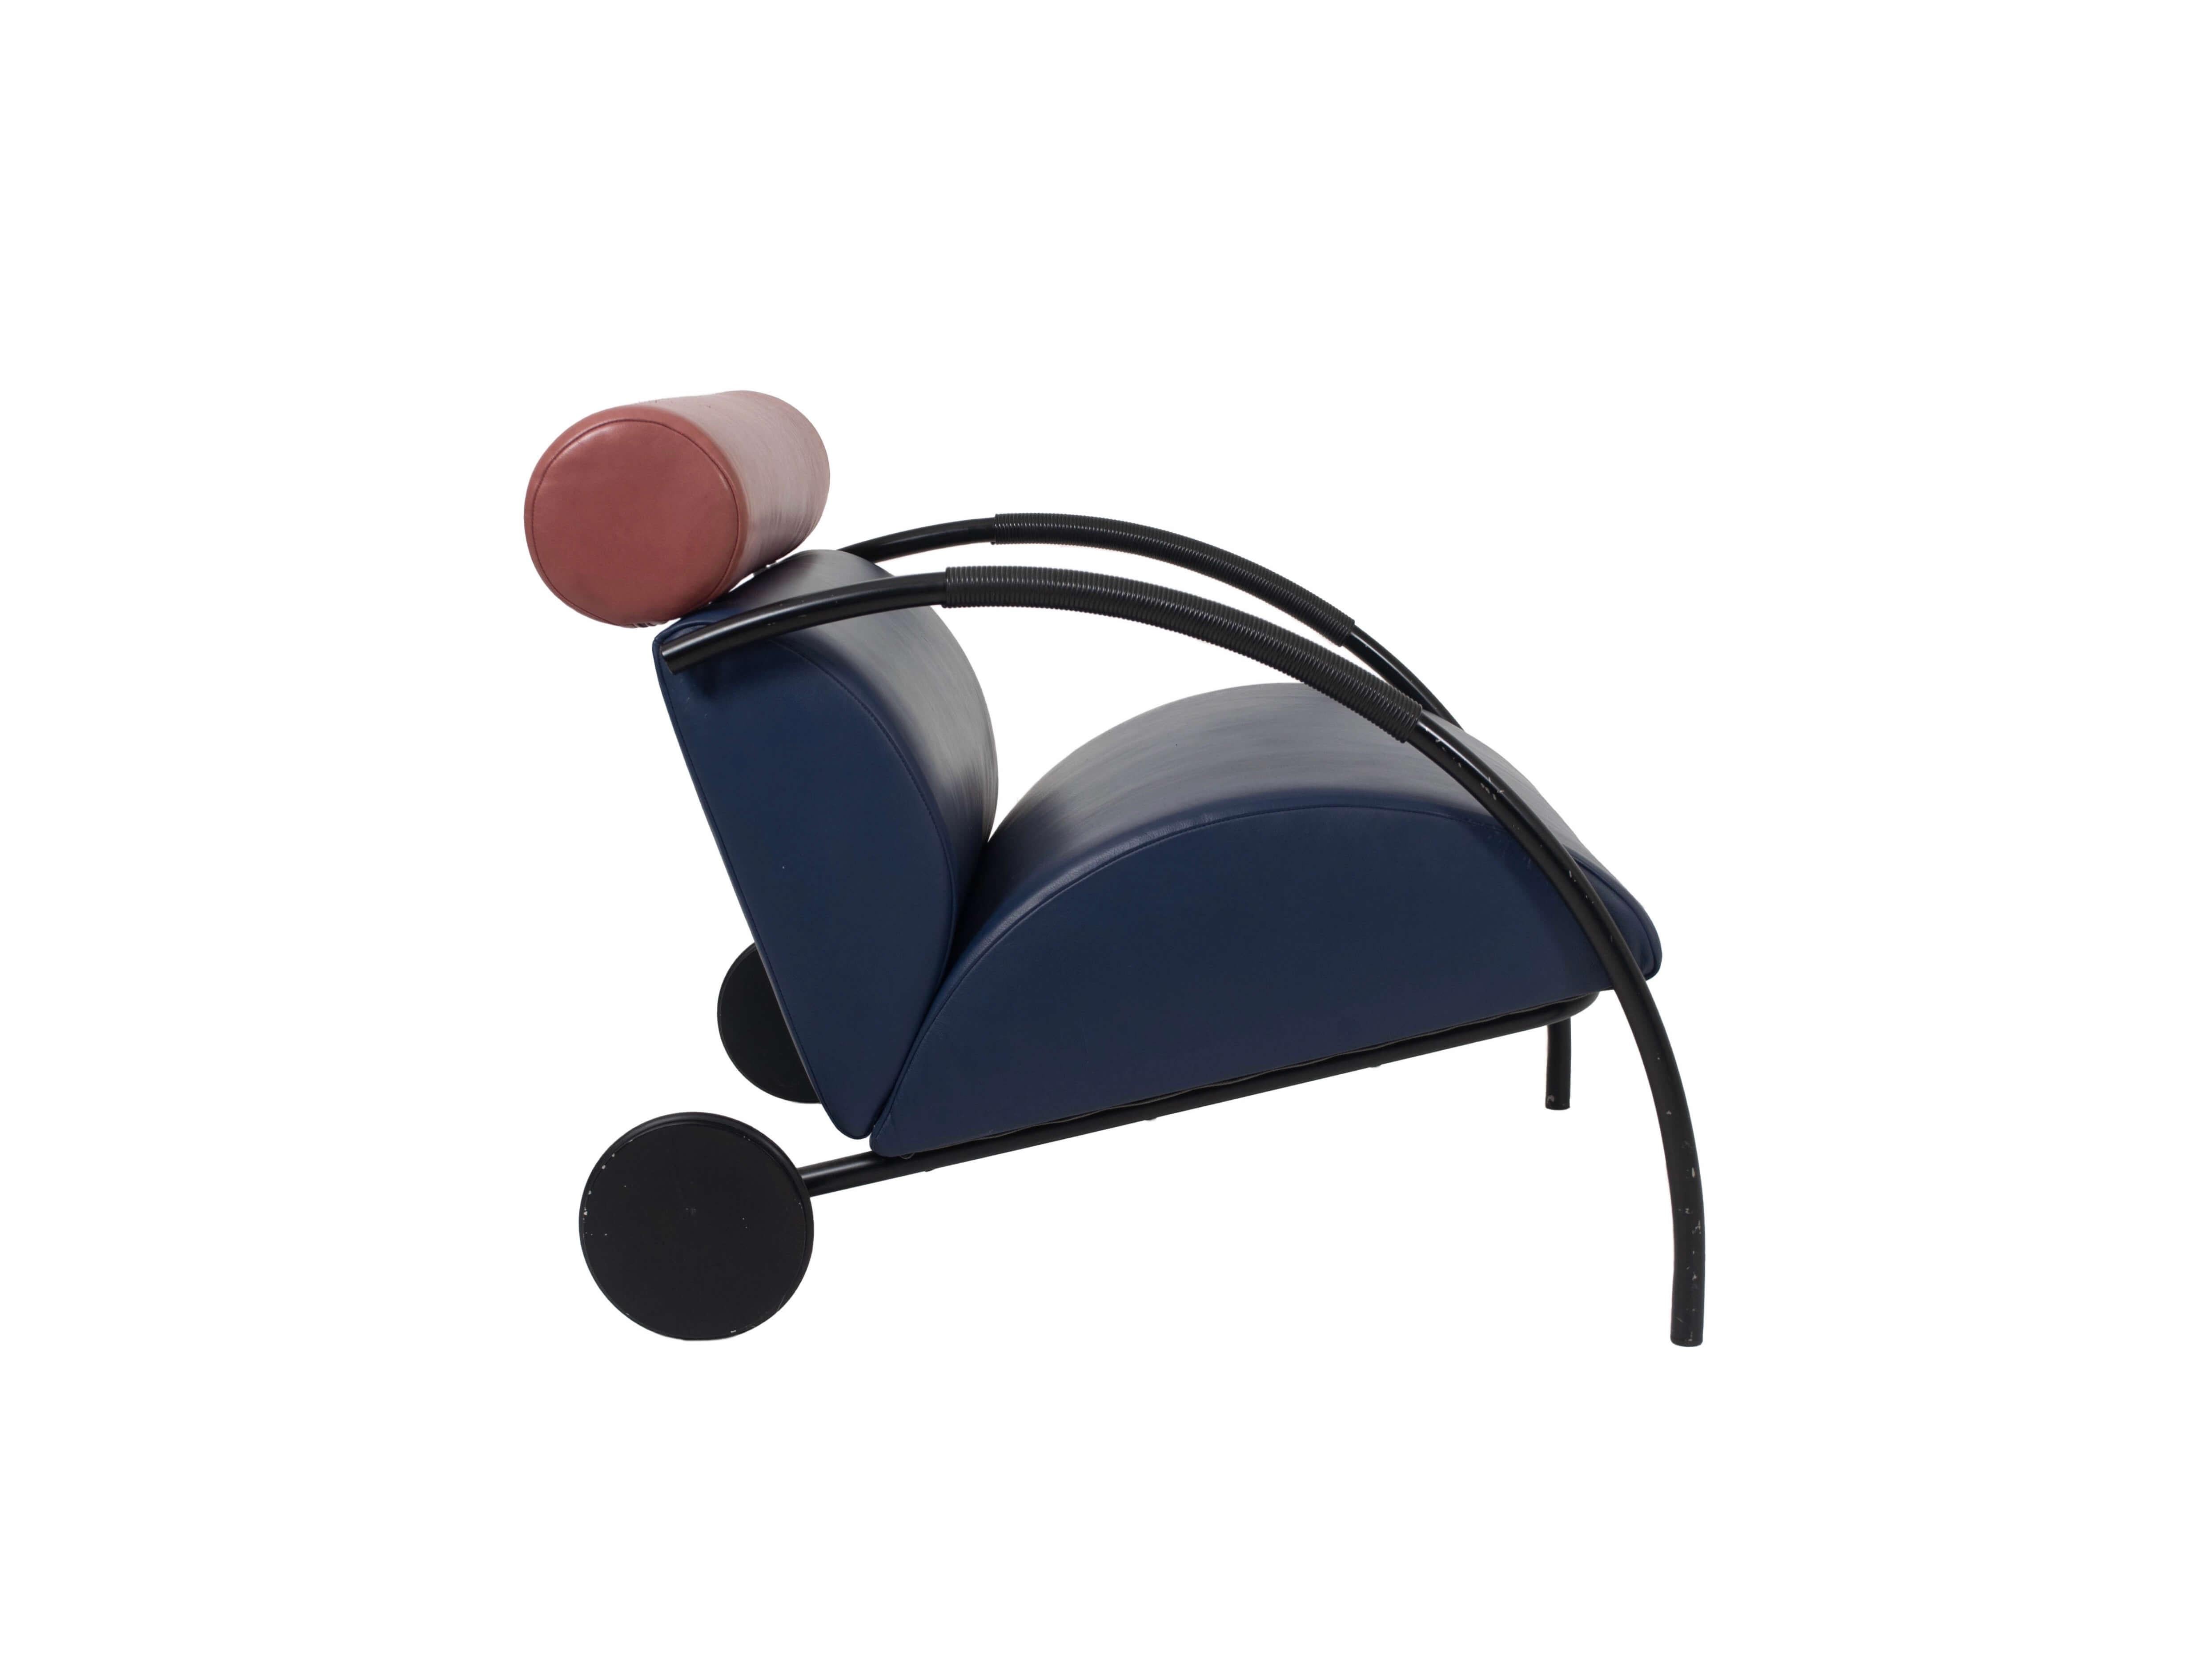 Postmoderner Pop Art 'Zyklus Chair' von Peter Maly für COR, Deutschland 1980er Jahre. Dieser Lounge-Sessel aus Leder hat ein tolles Design und ist sehr bequem. Das Gestell besteht aus einem Stahlrohrrahmen mit Armlehnen, die mit schwarzen Schnüren